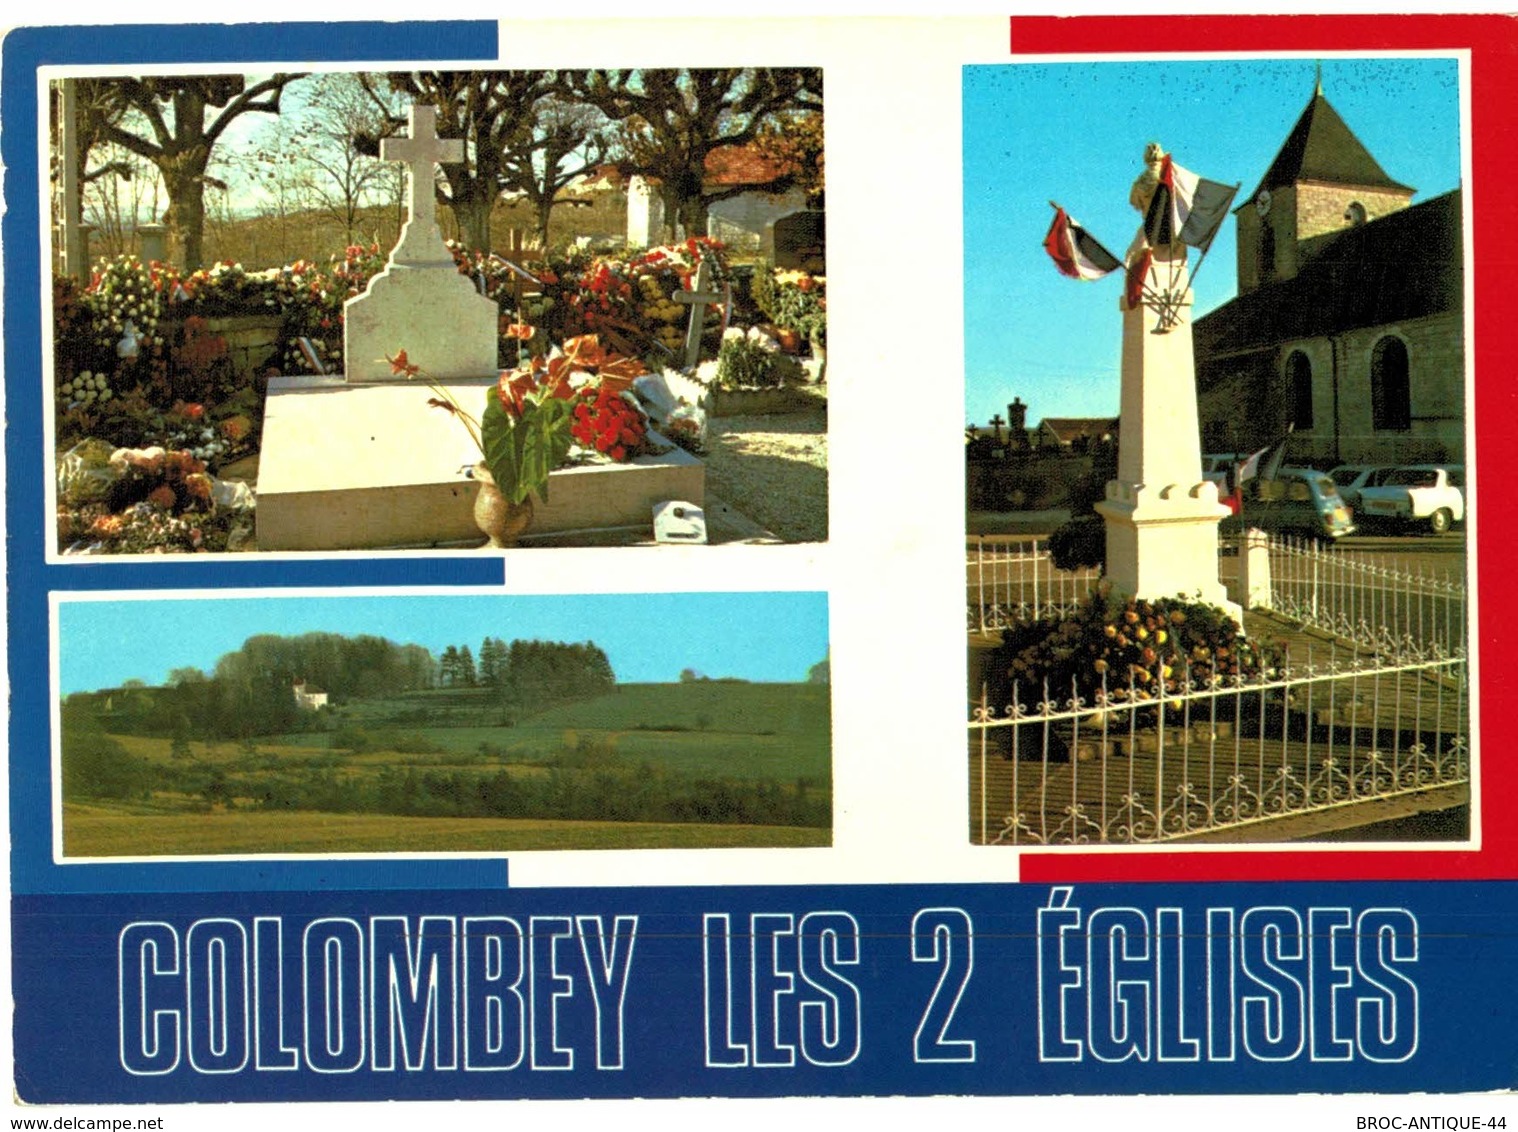 LOT N°1238 - LOT DE 60 CARTES DE COLOMBEY-LES-DEUX-EGLISES ETDU Gal DE GAULLE +CARTE LETTRE DERNIER SCAN + JOLIES PHOTOS - Colombey Les Deux Eglises